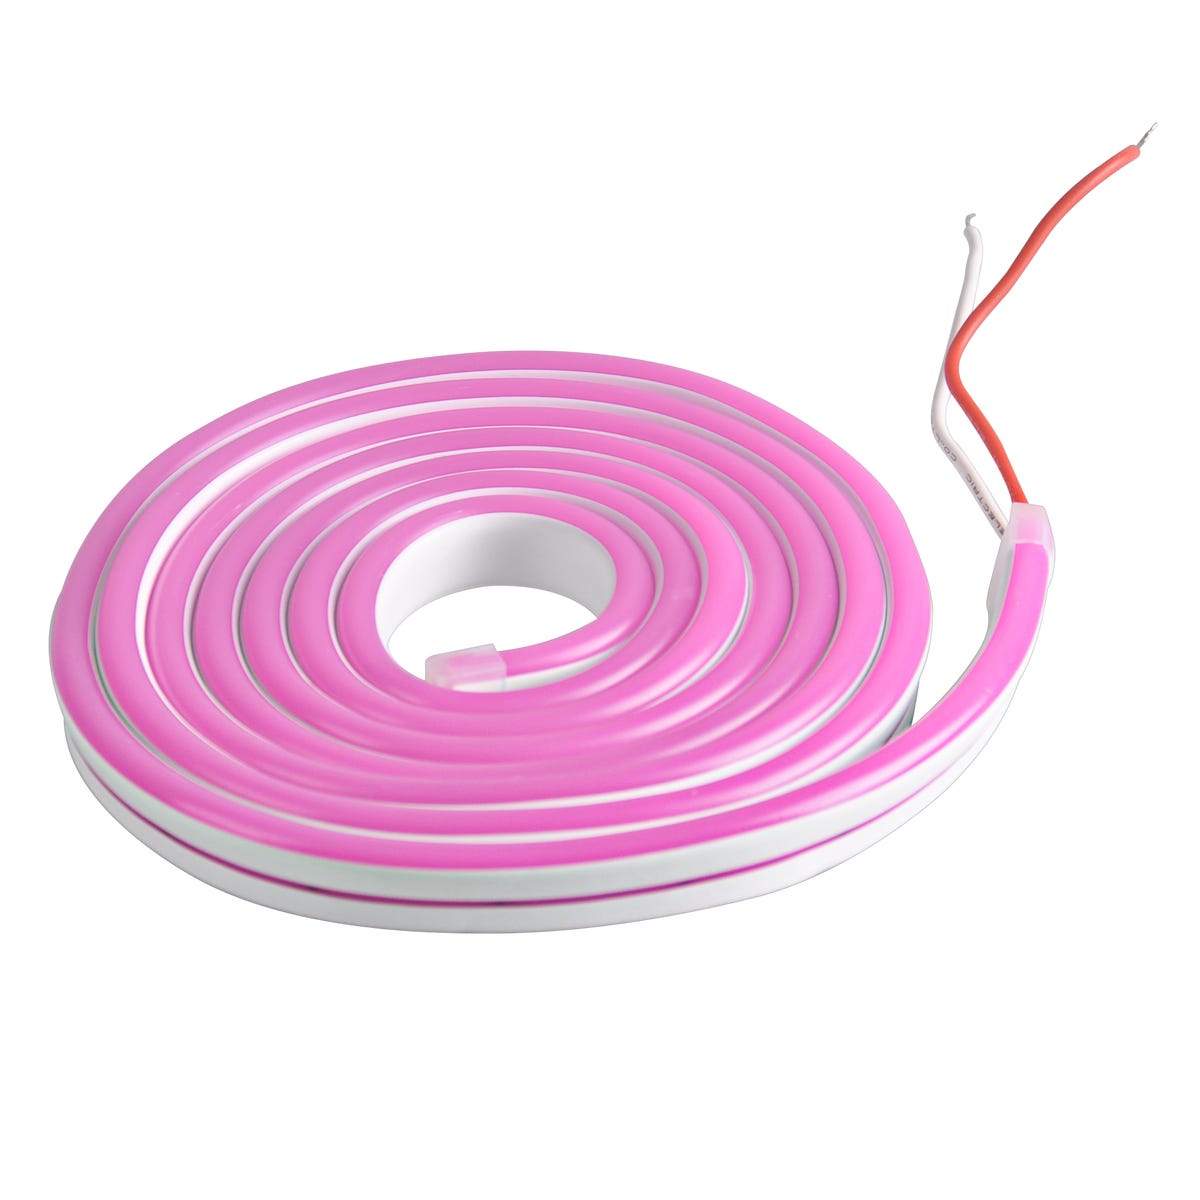 Фото - LED-стрічка Neon LED IP65 2 m różowy Polux